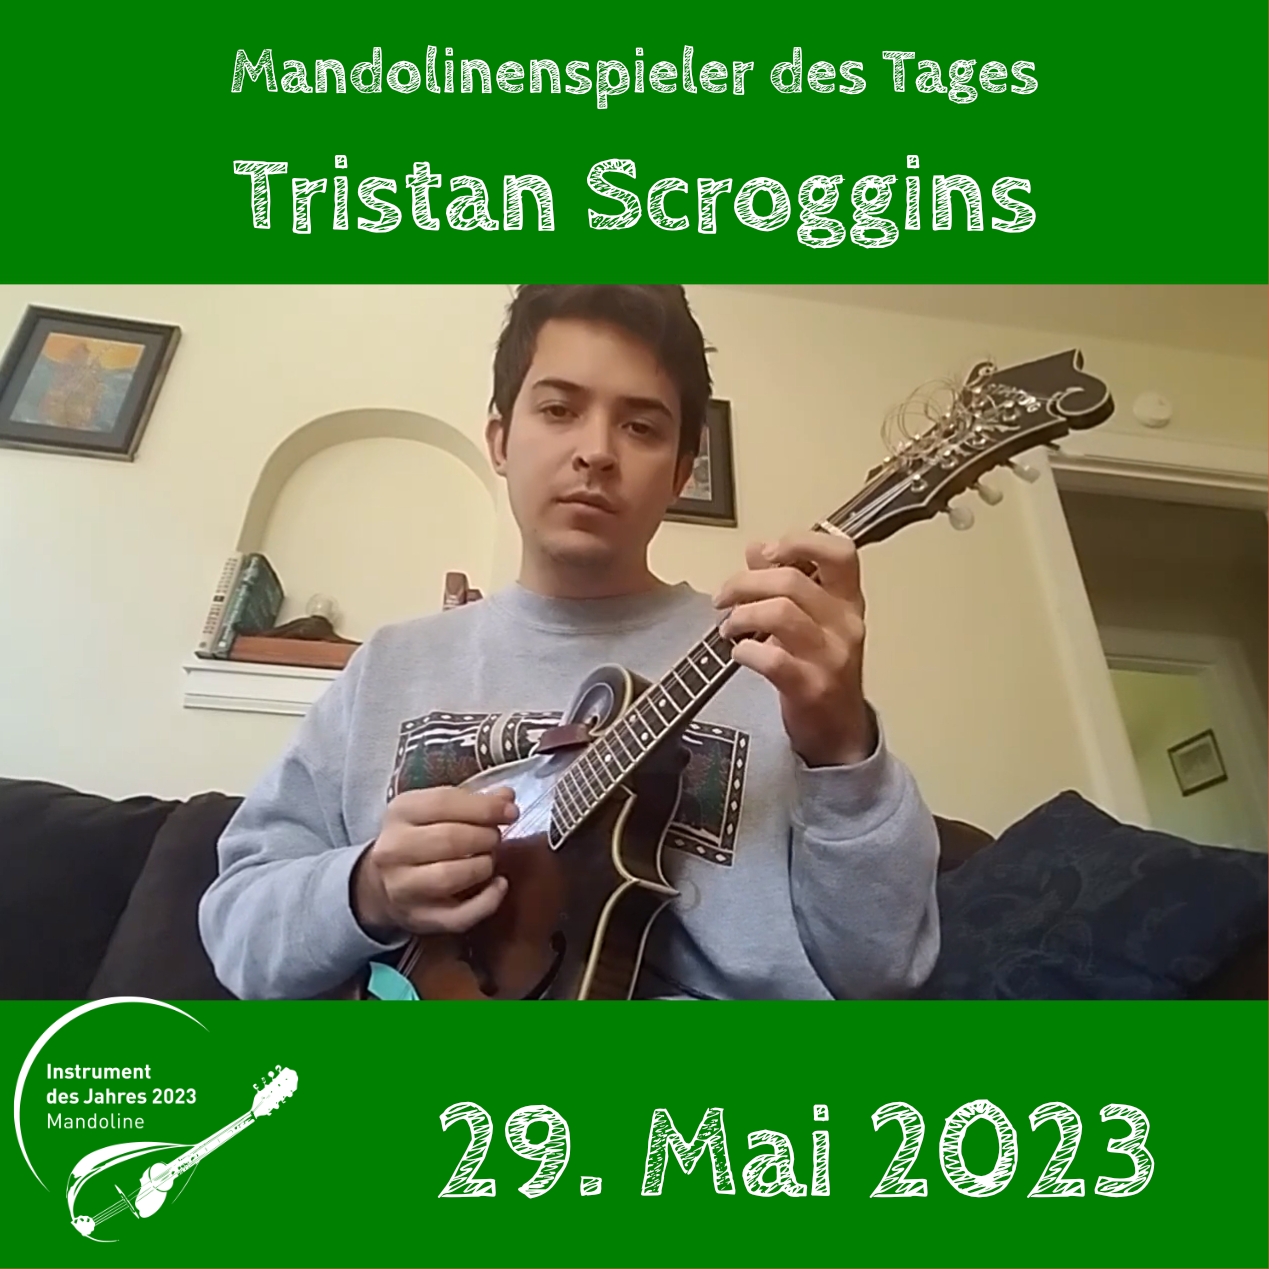 Tristan Scroggins Mandoline Instrument des Jahres 2023 Mandolinenspieler Mandolinenspielerin des Tages